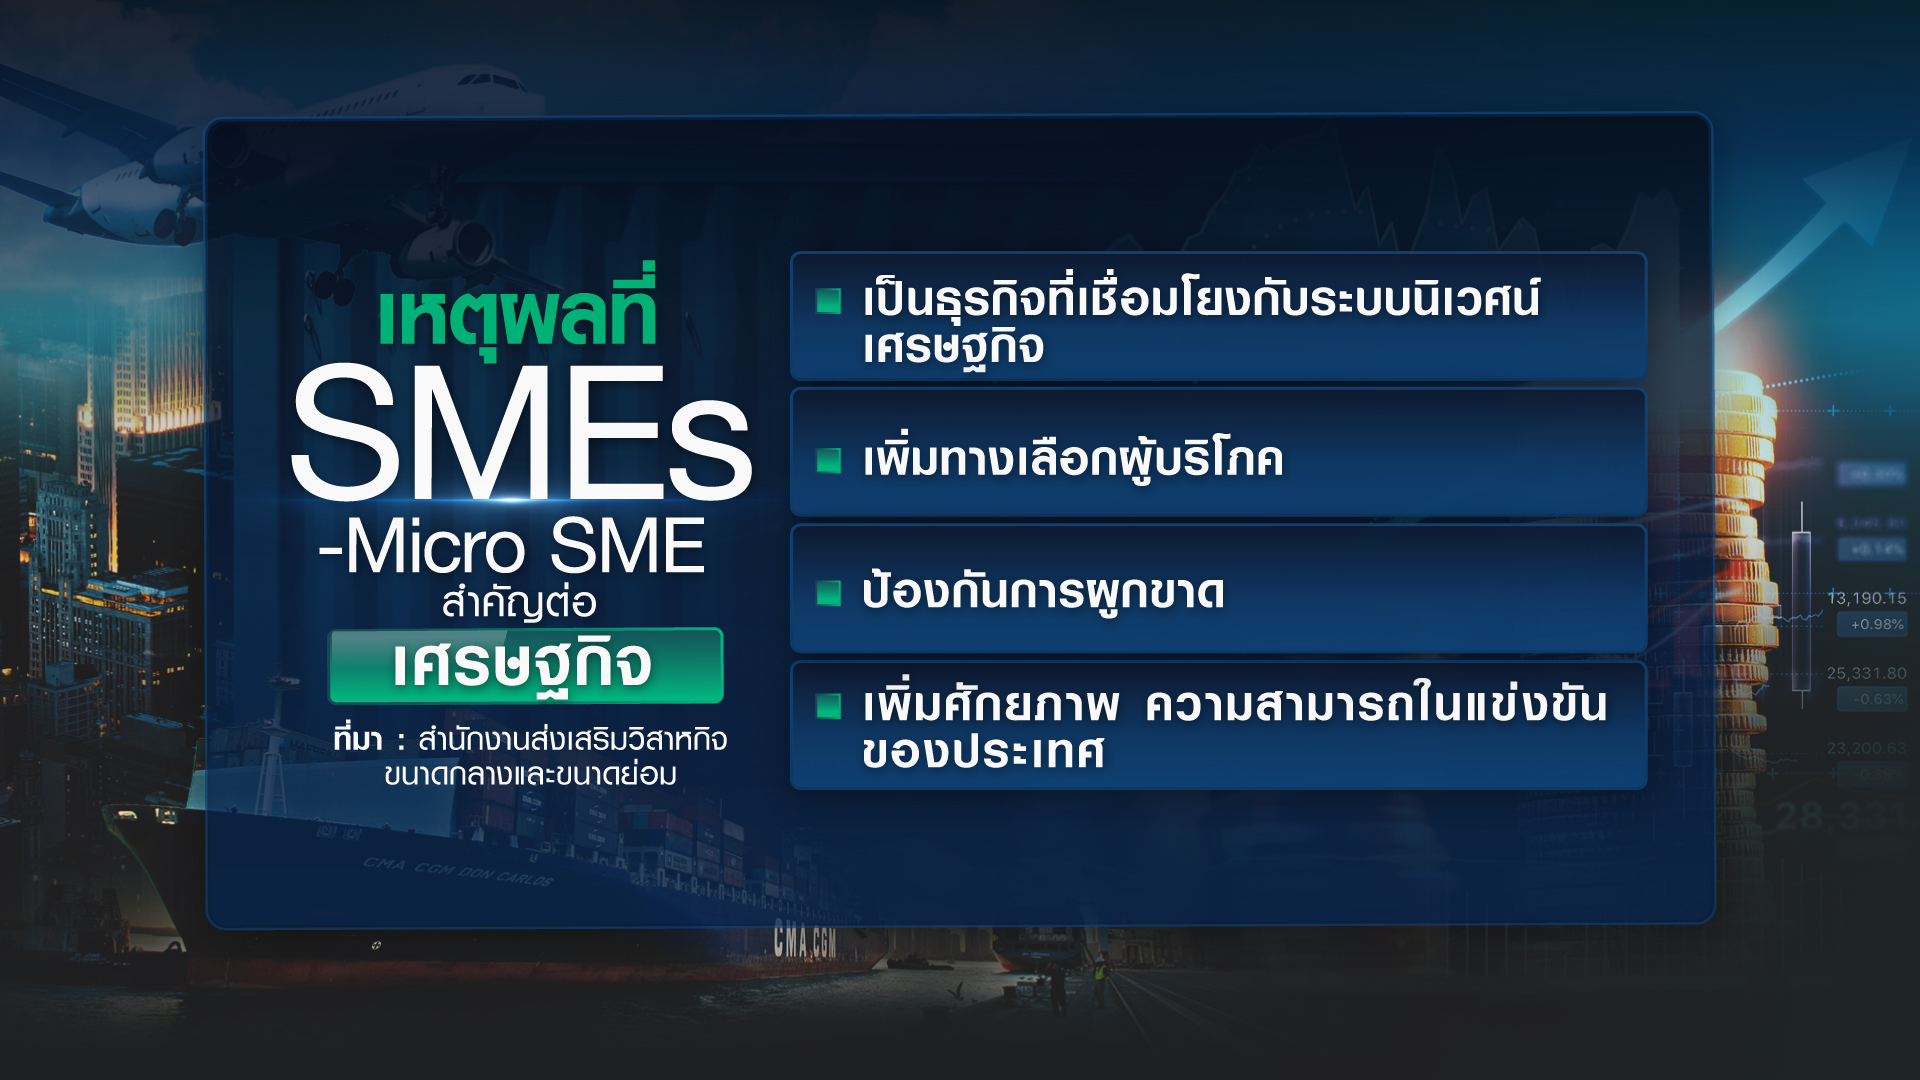 ดัน SMEs-Micro SMEs ลุยส่งออก เสริมแกร่งเศรษฐกิจ